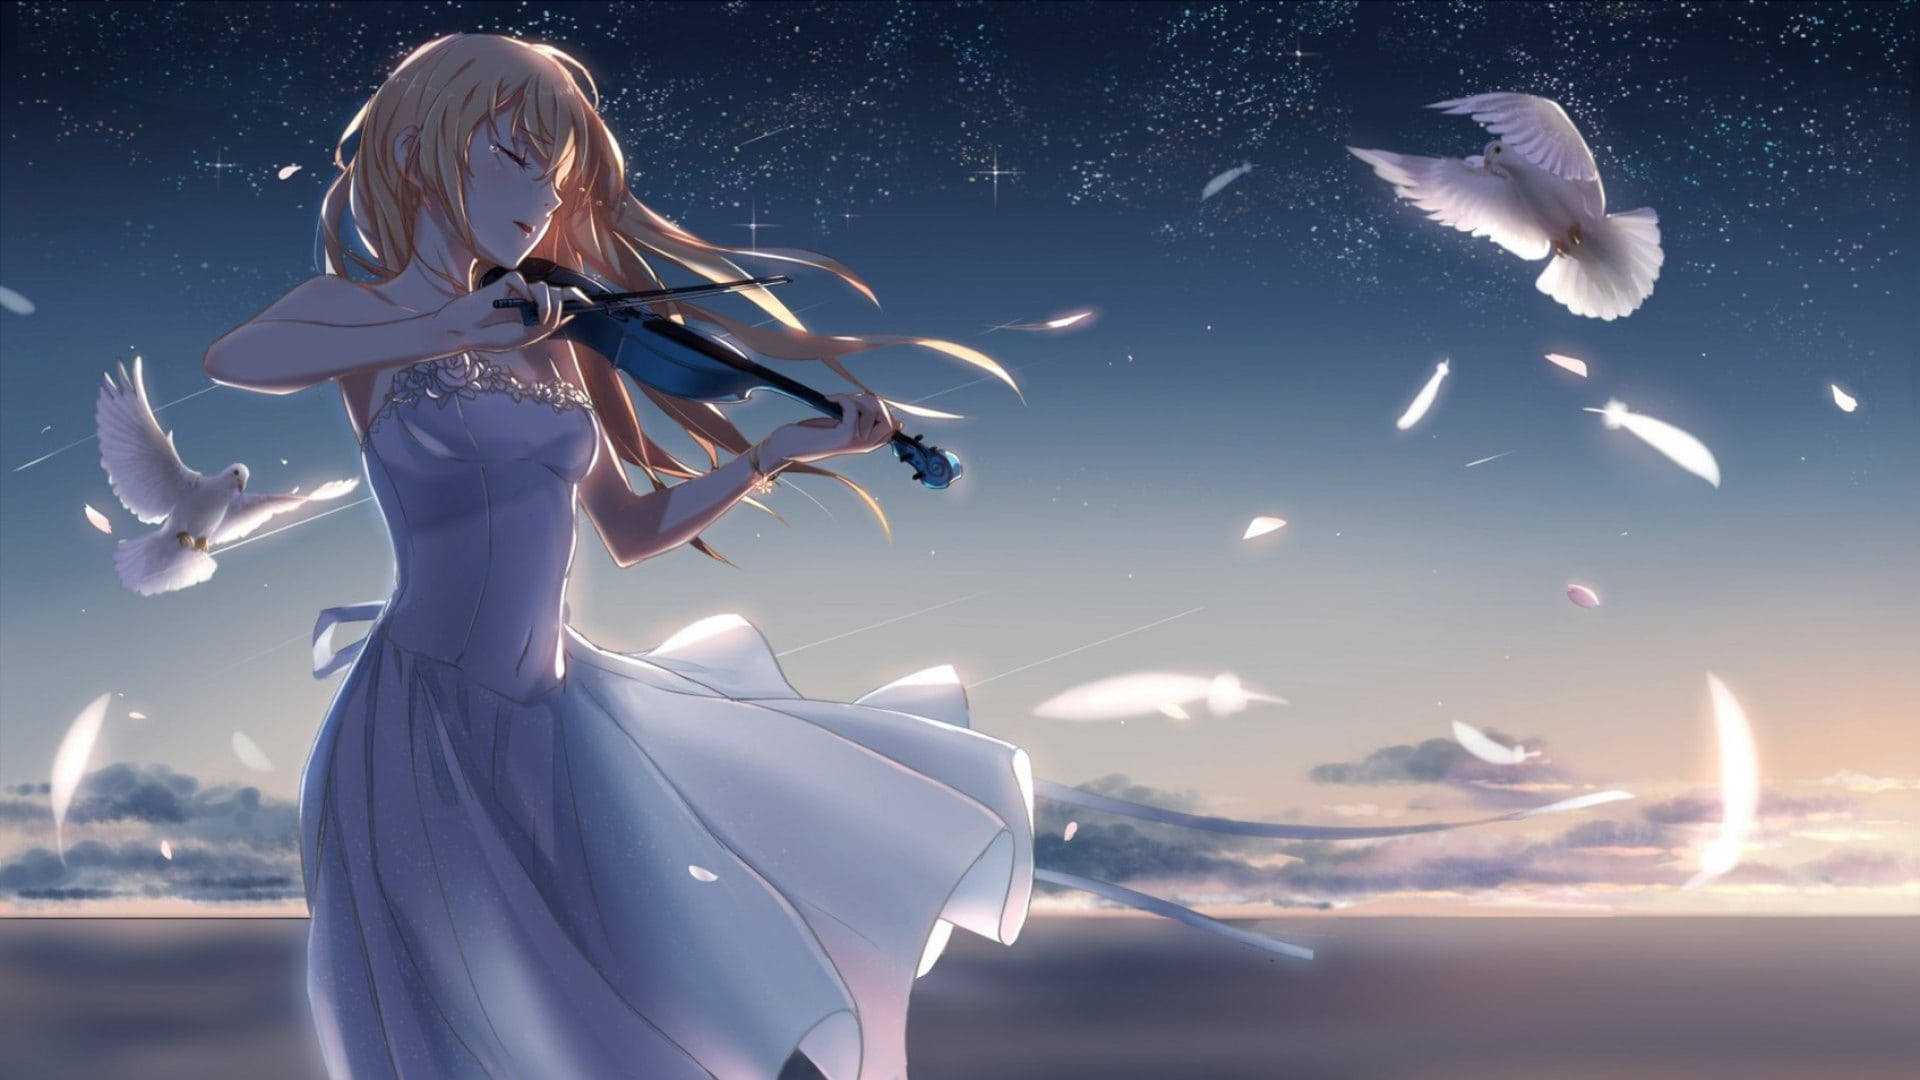 Aesthetic Sad Anime Girl Playing Violin